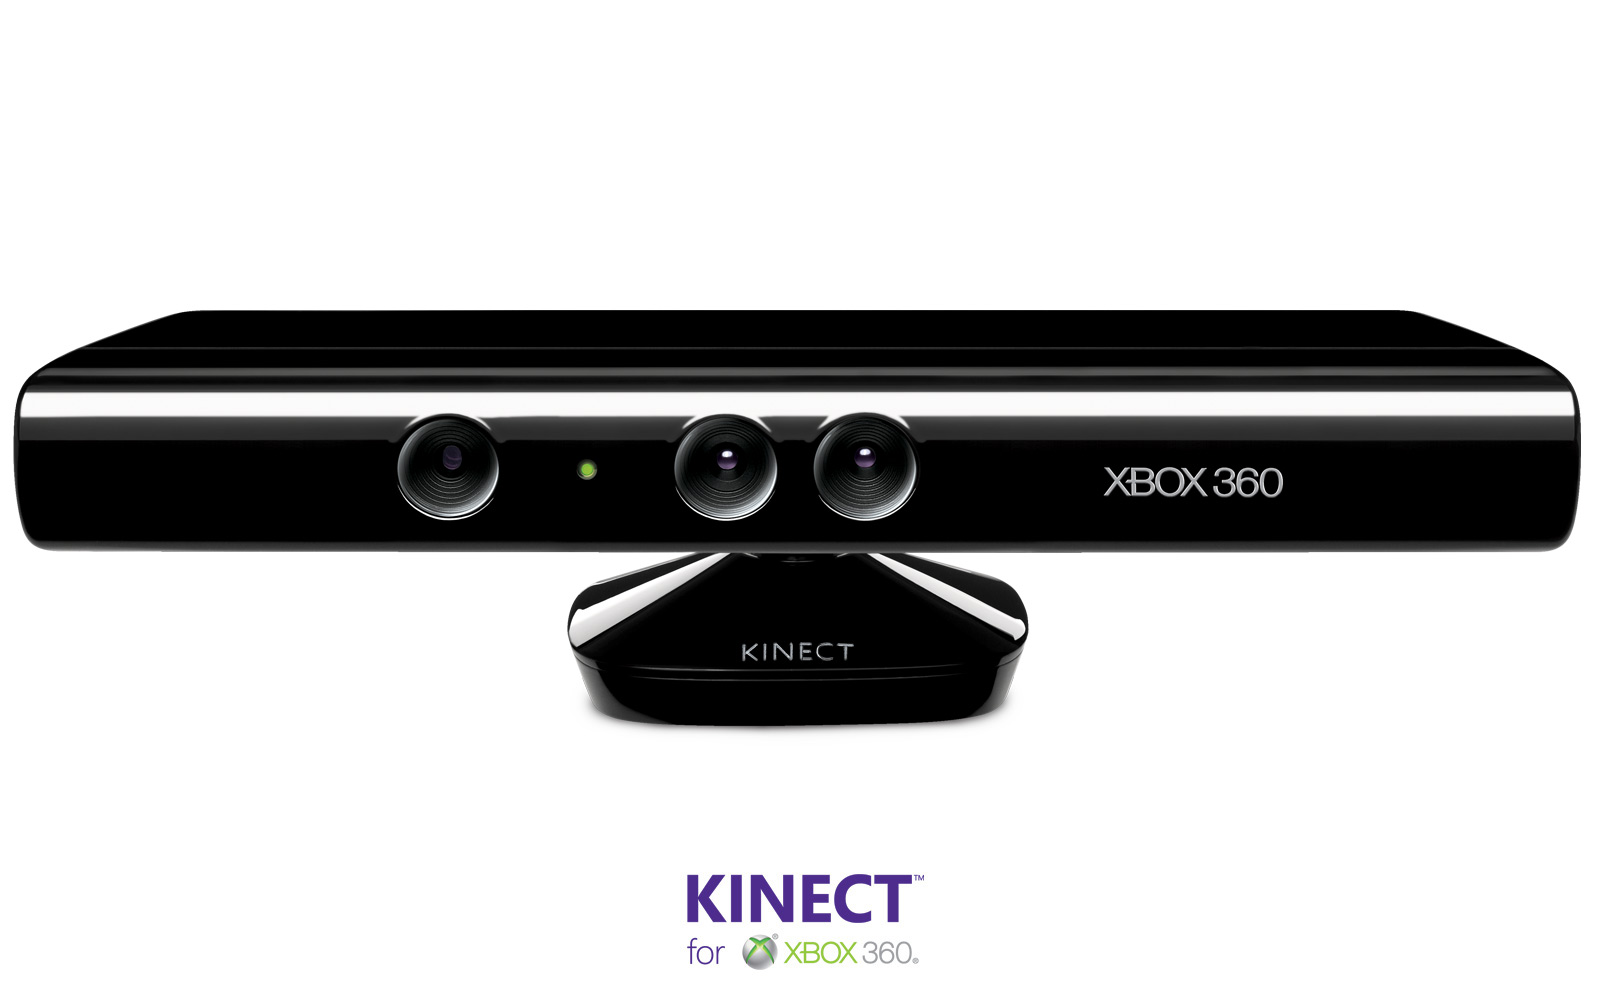 O Kinect realmente é potiguar?